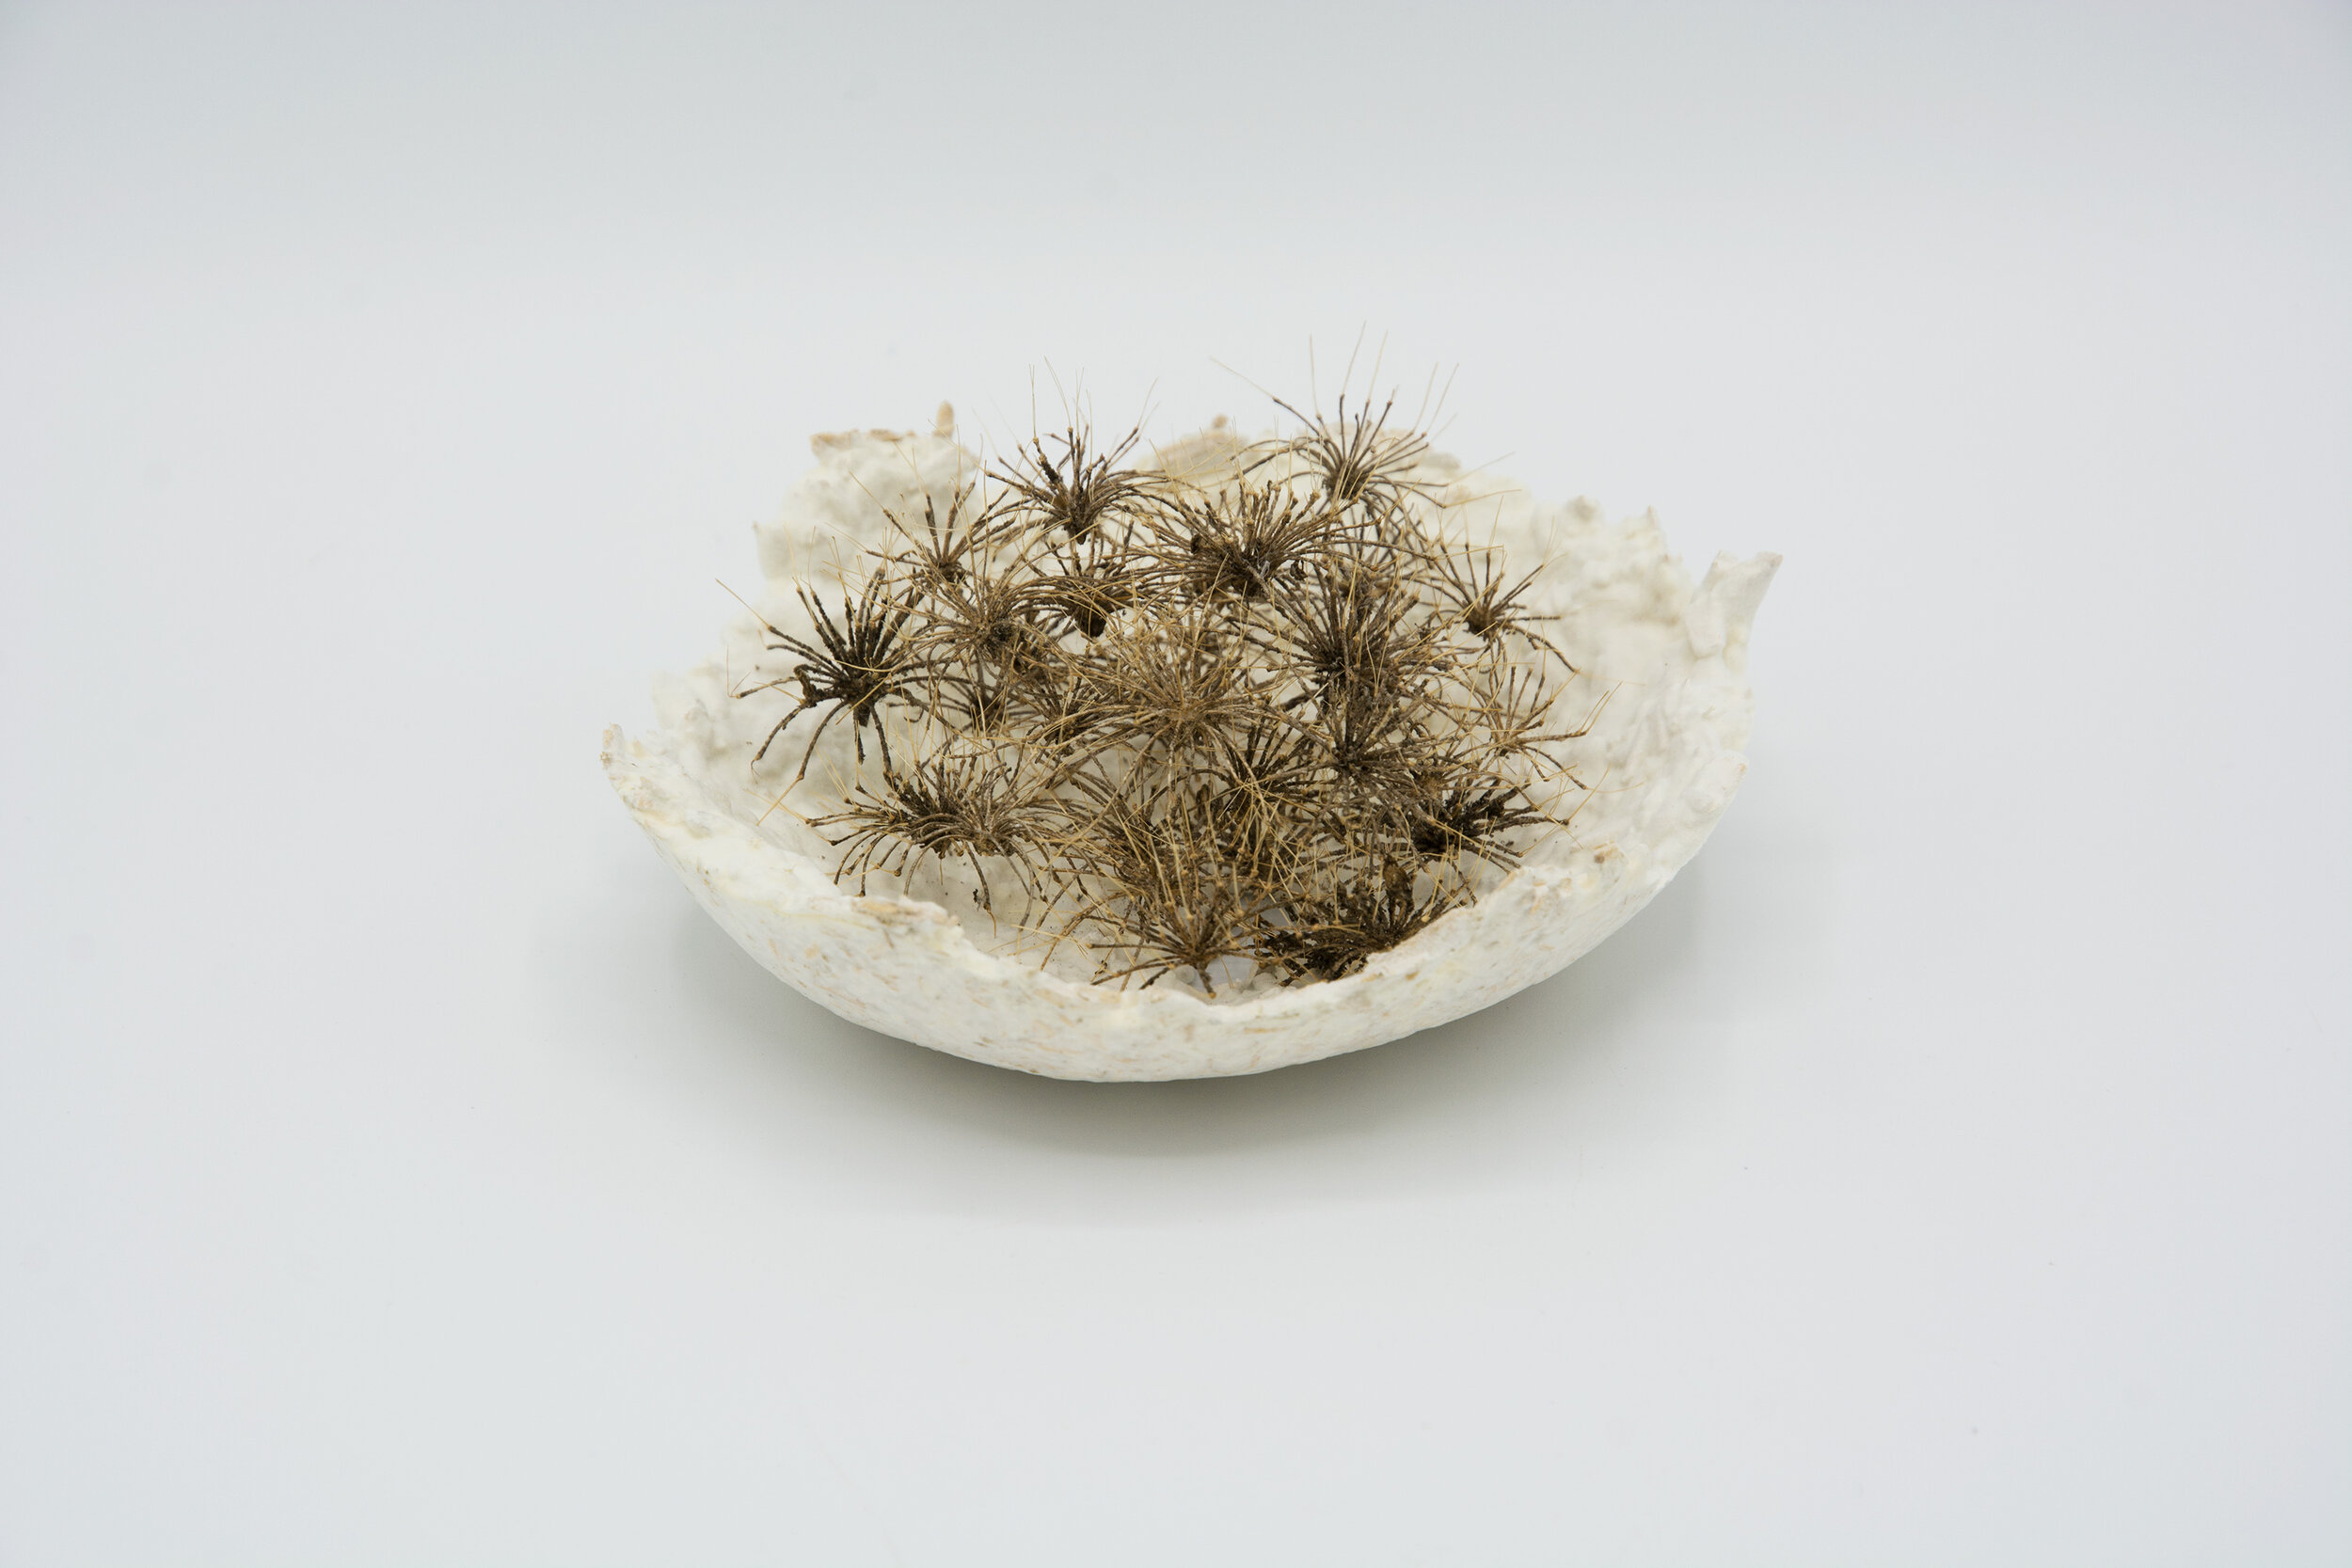  Kelly M O'Brien, One Meter Quadrat, detail. Mycelium, hogweed seed heads ©2021 